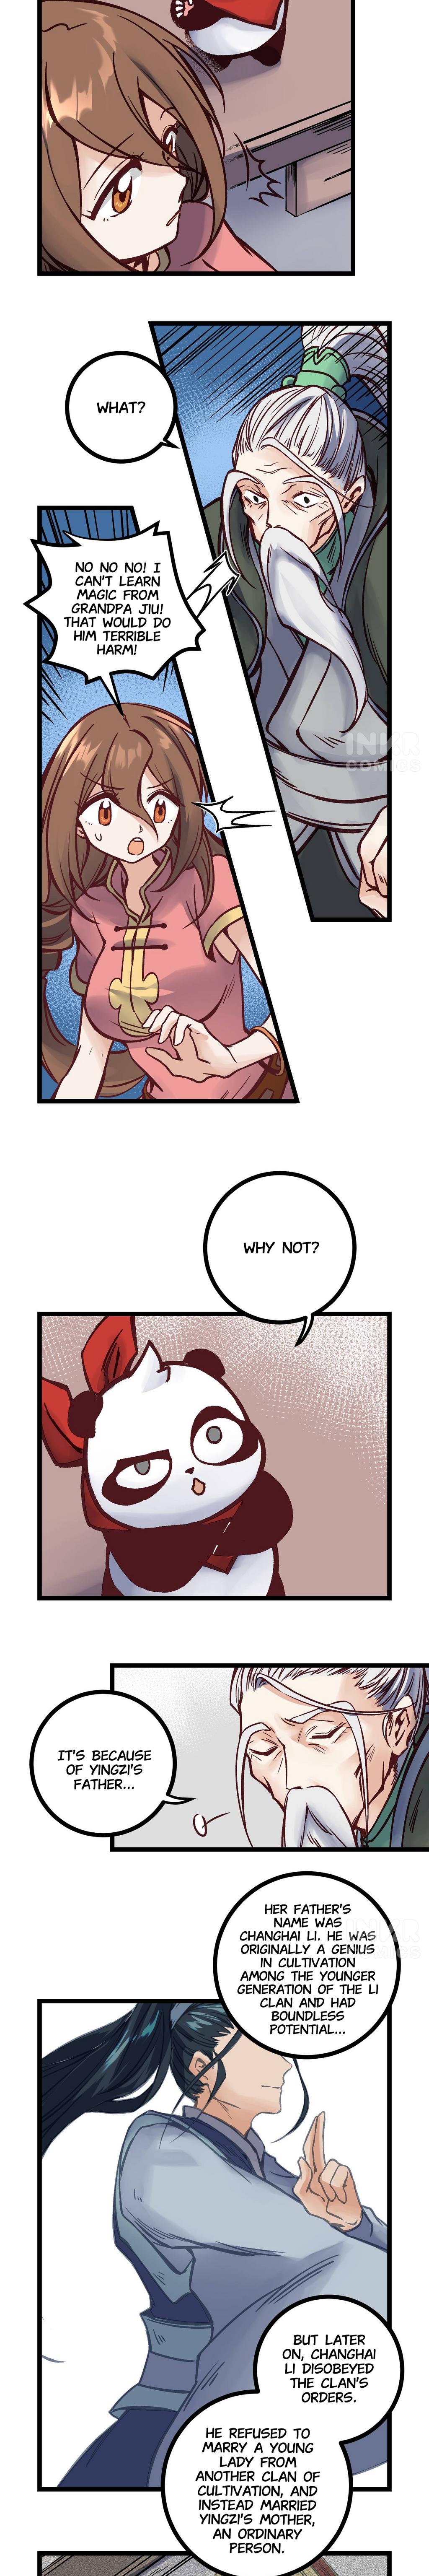 Naughty Panda - Page 3